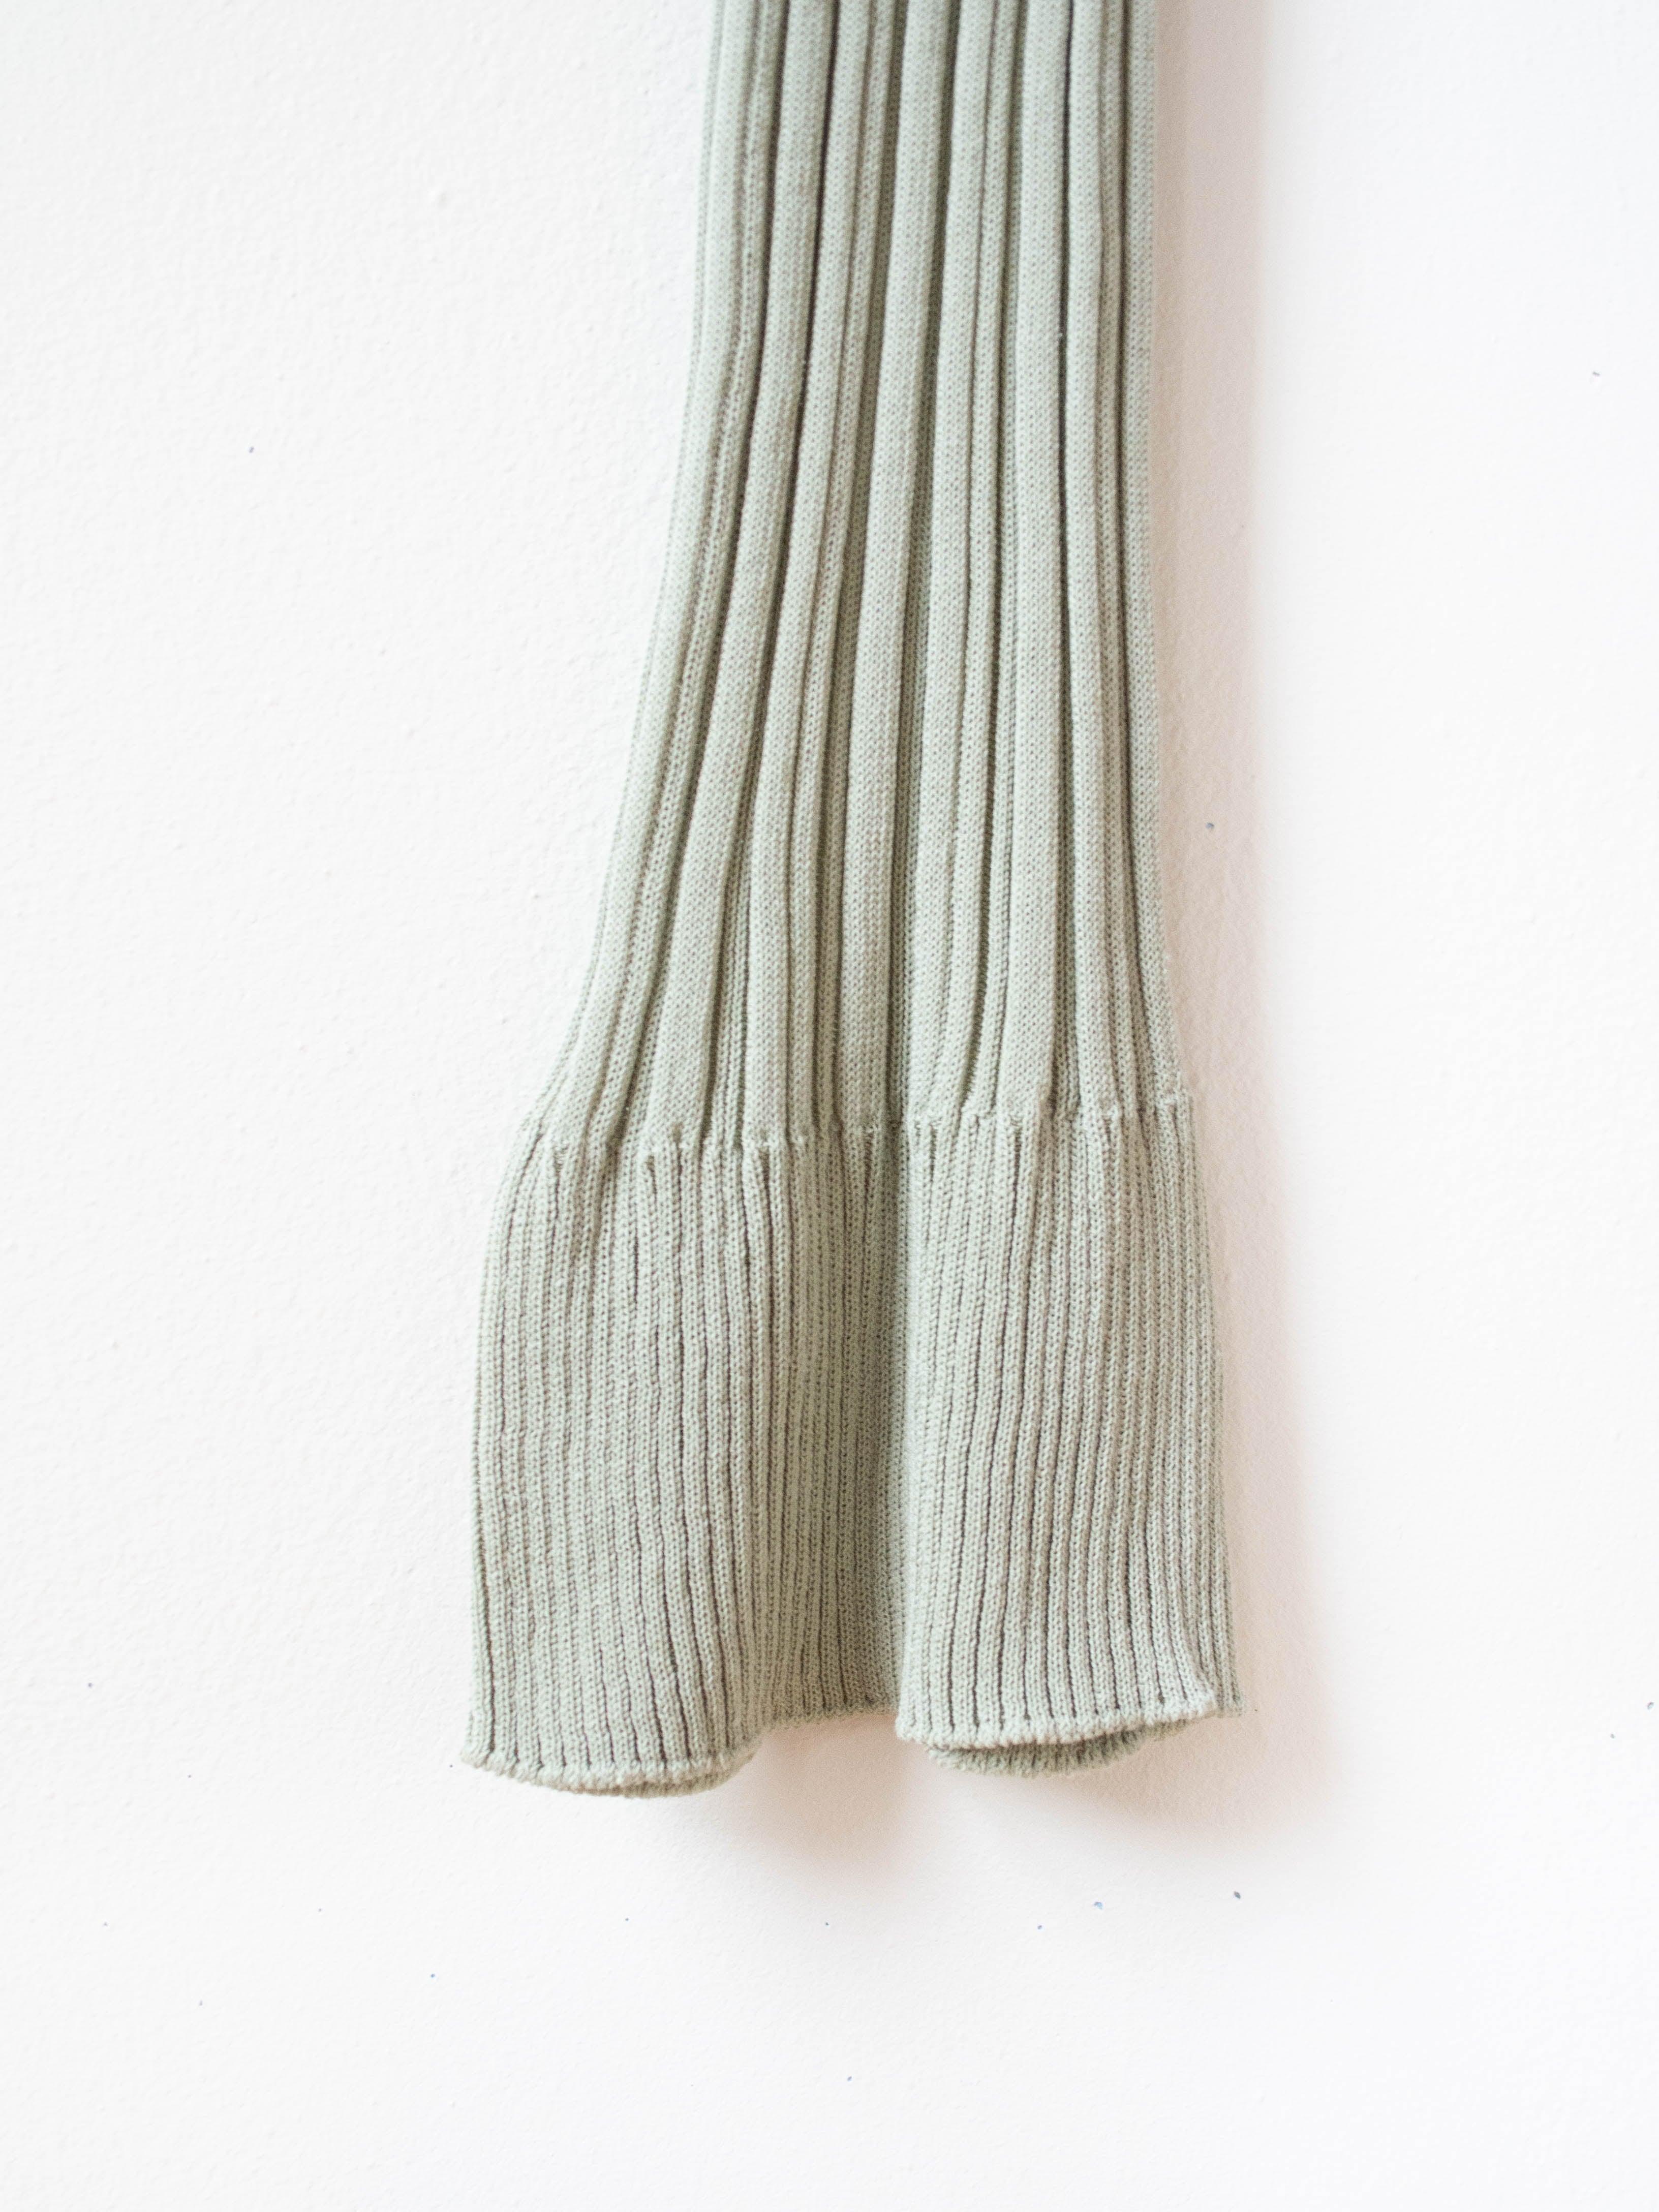 Namu Shop - Unfil High Twist Cotton Ribbed Knit Leggings - Smokey Green